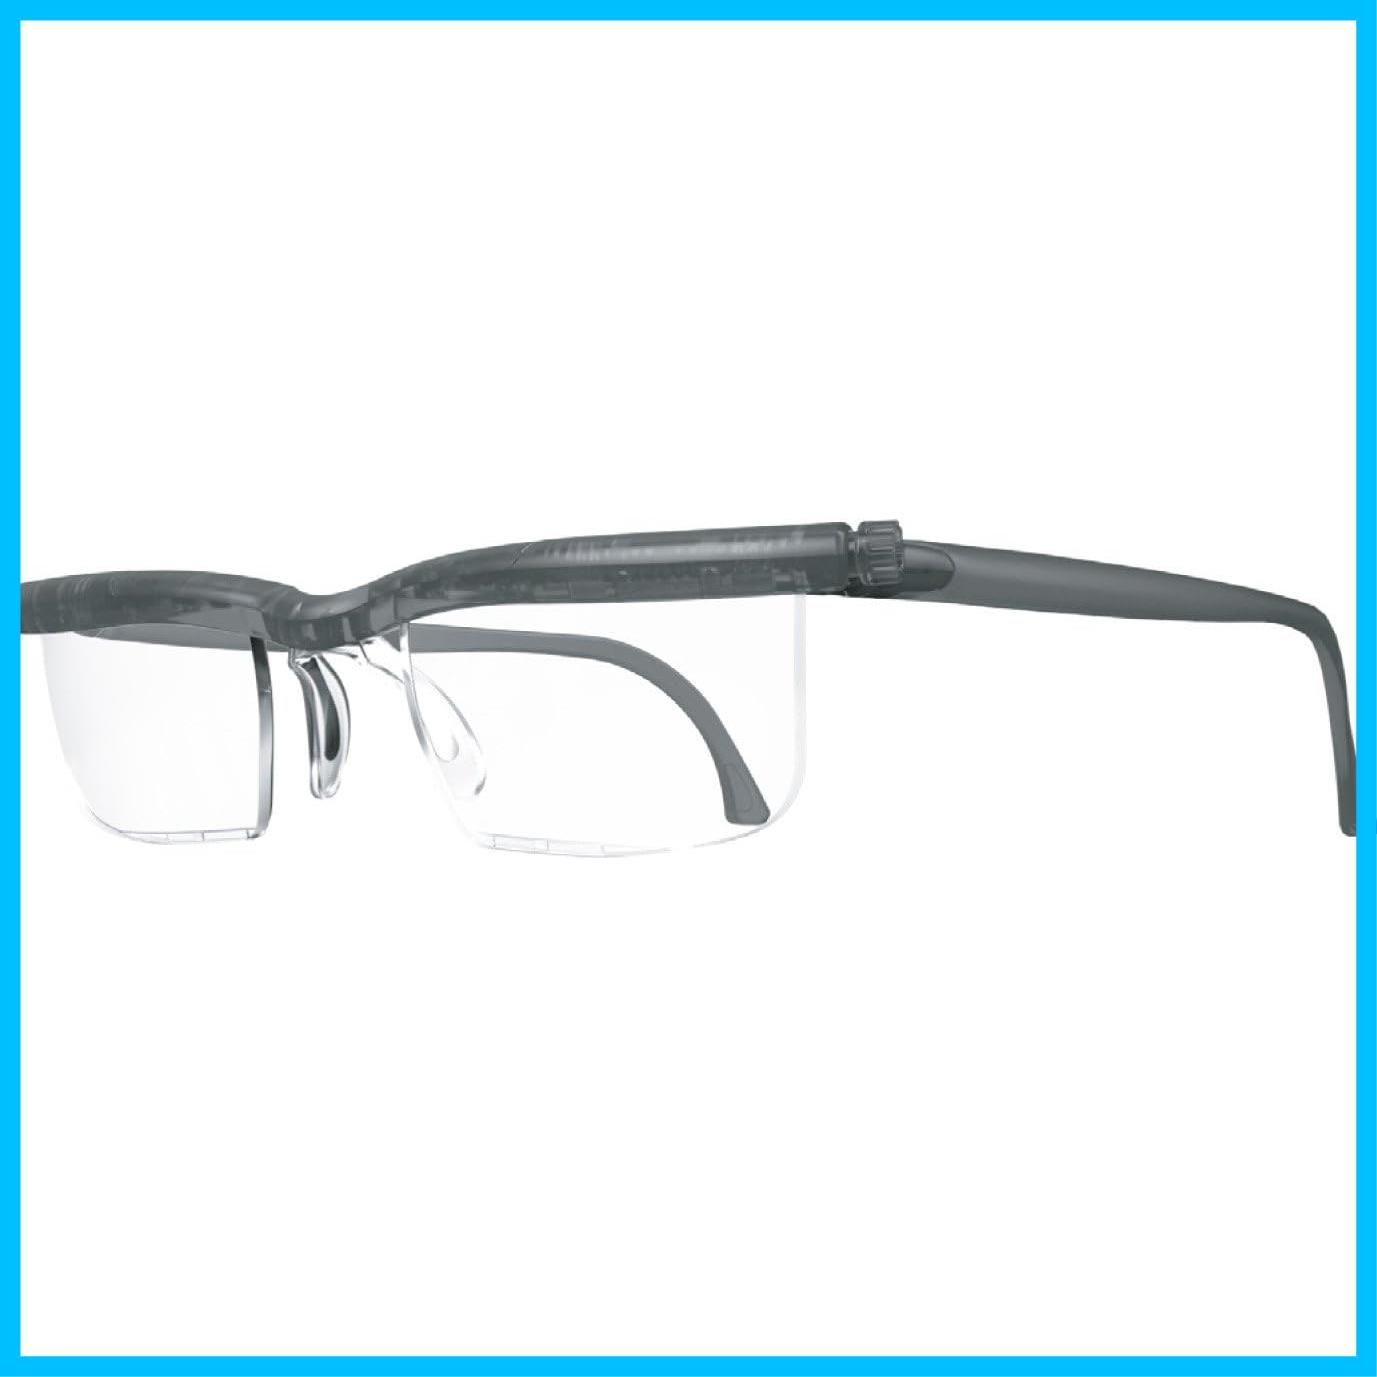 【迅速発送】PRESBY 自由に度数調整できる老眼鏡 プレスビー ドゥーアクティブ グレー 左右のつまみを回すだけで度数調節 度数  +0.5D～+4.0D 遠視 シニアグラス ブルーライト UVカット 拡大鏡 メガネ おしゃれ